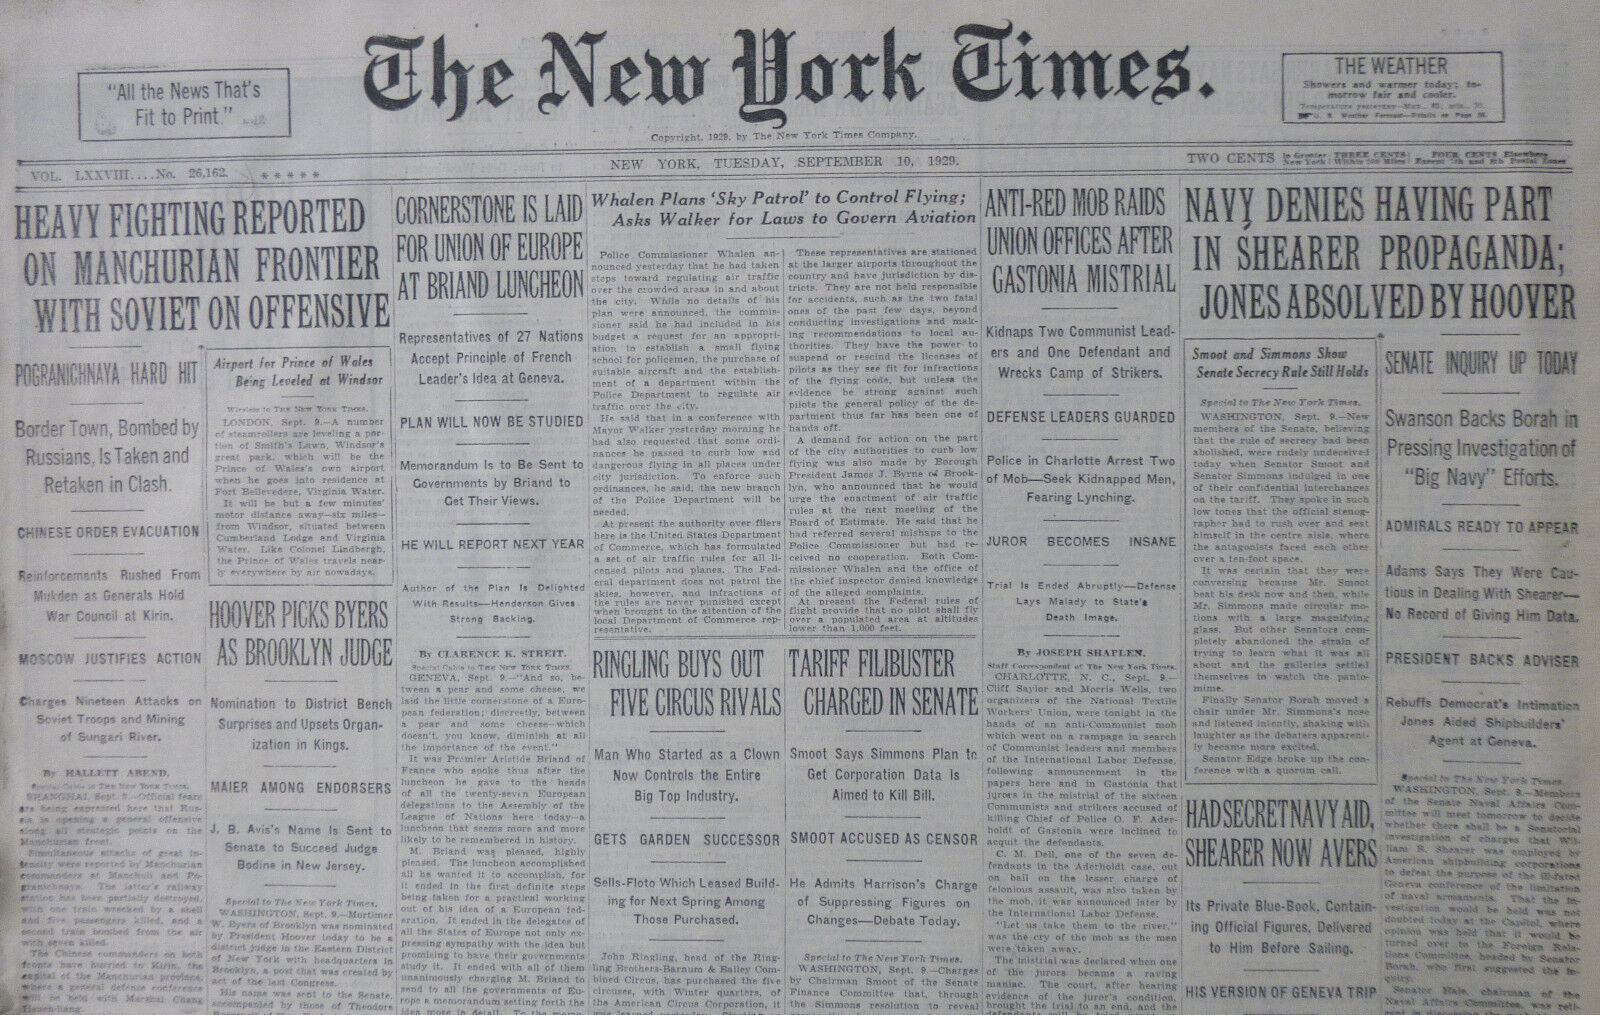 9-1929 September 10 HEAVY FIGHTING MANCHURIA BORDER STOCK MARKET NERVOUS WHALEN